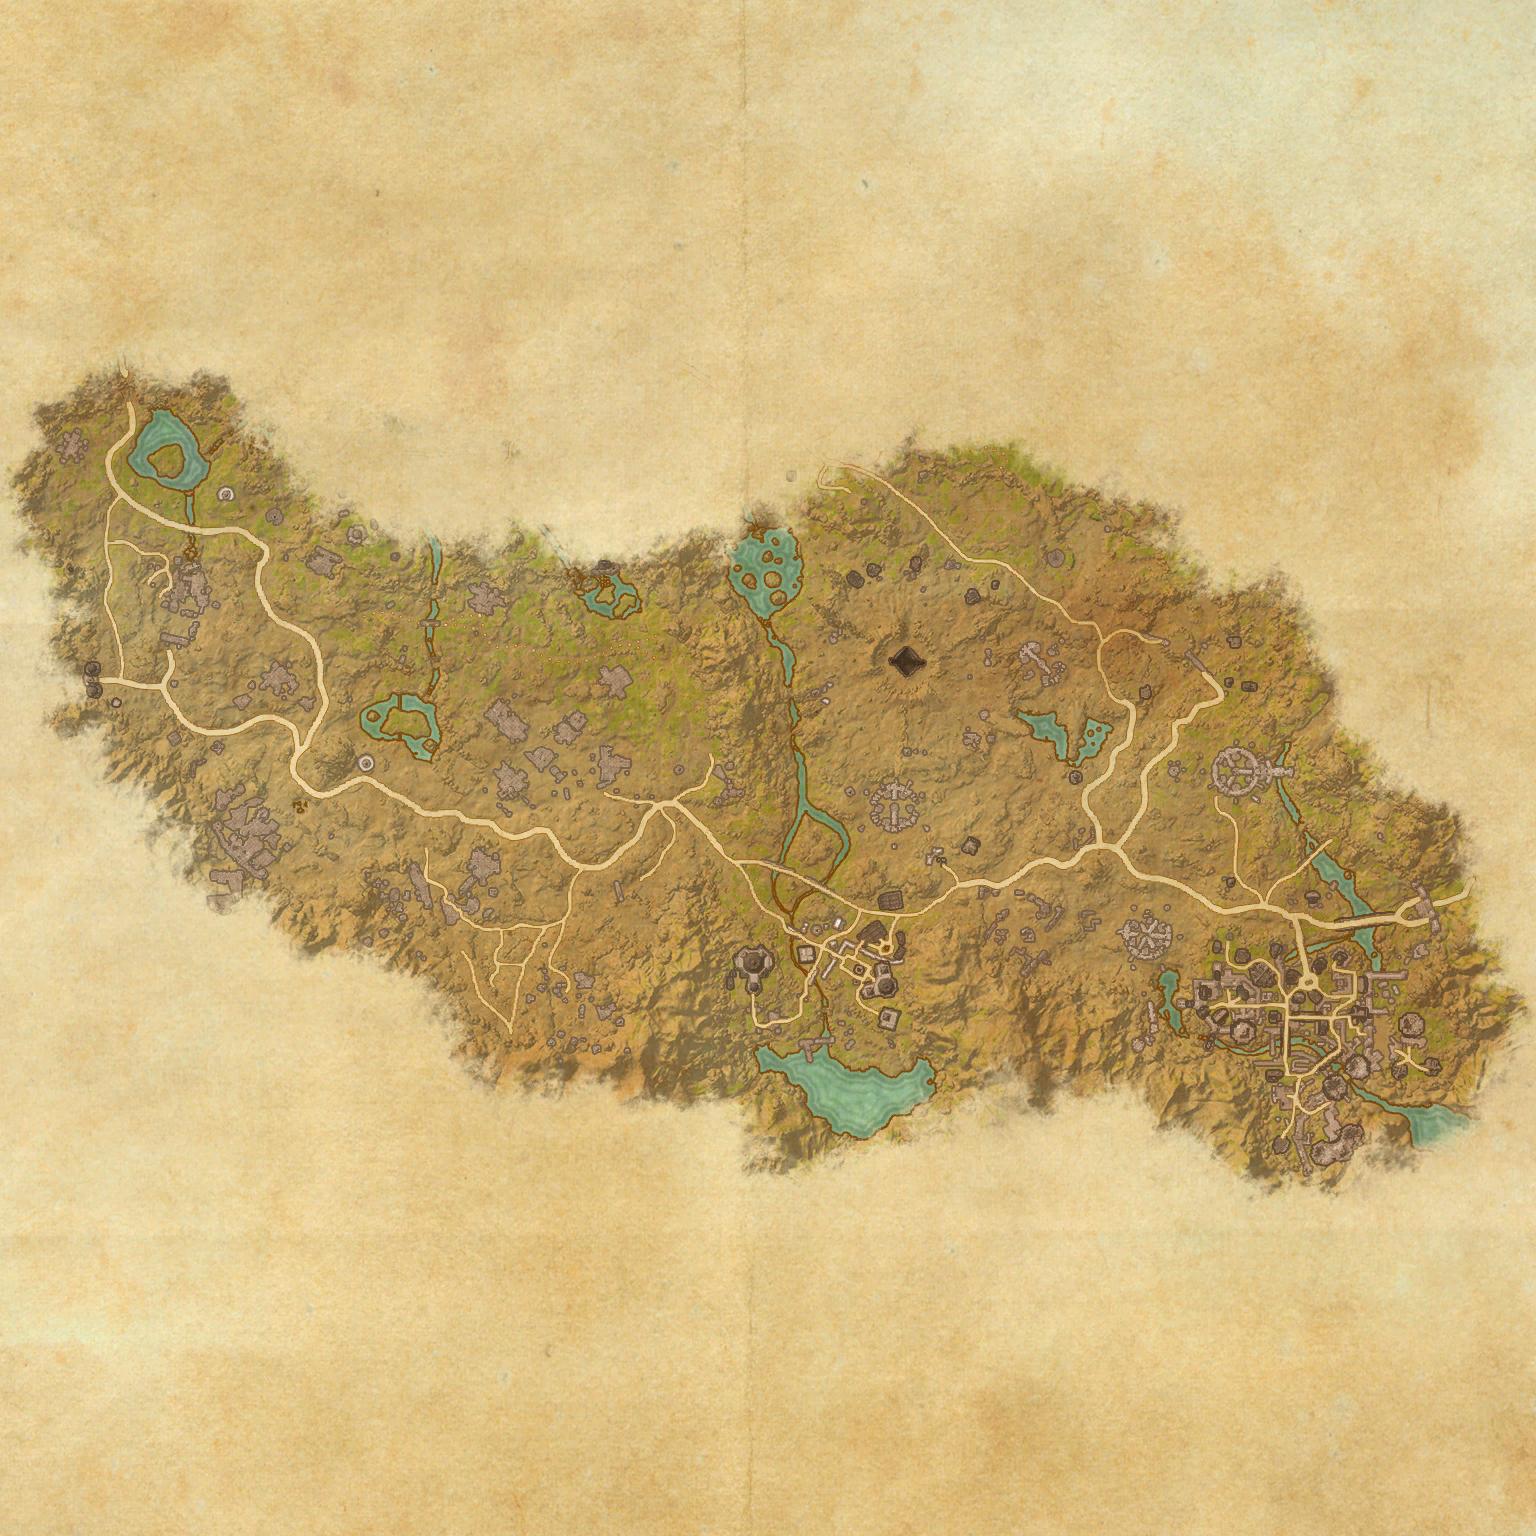 Craglorn treasure maps